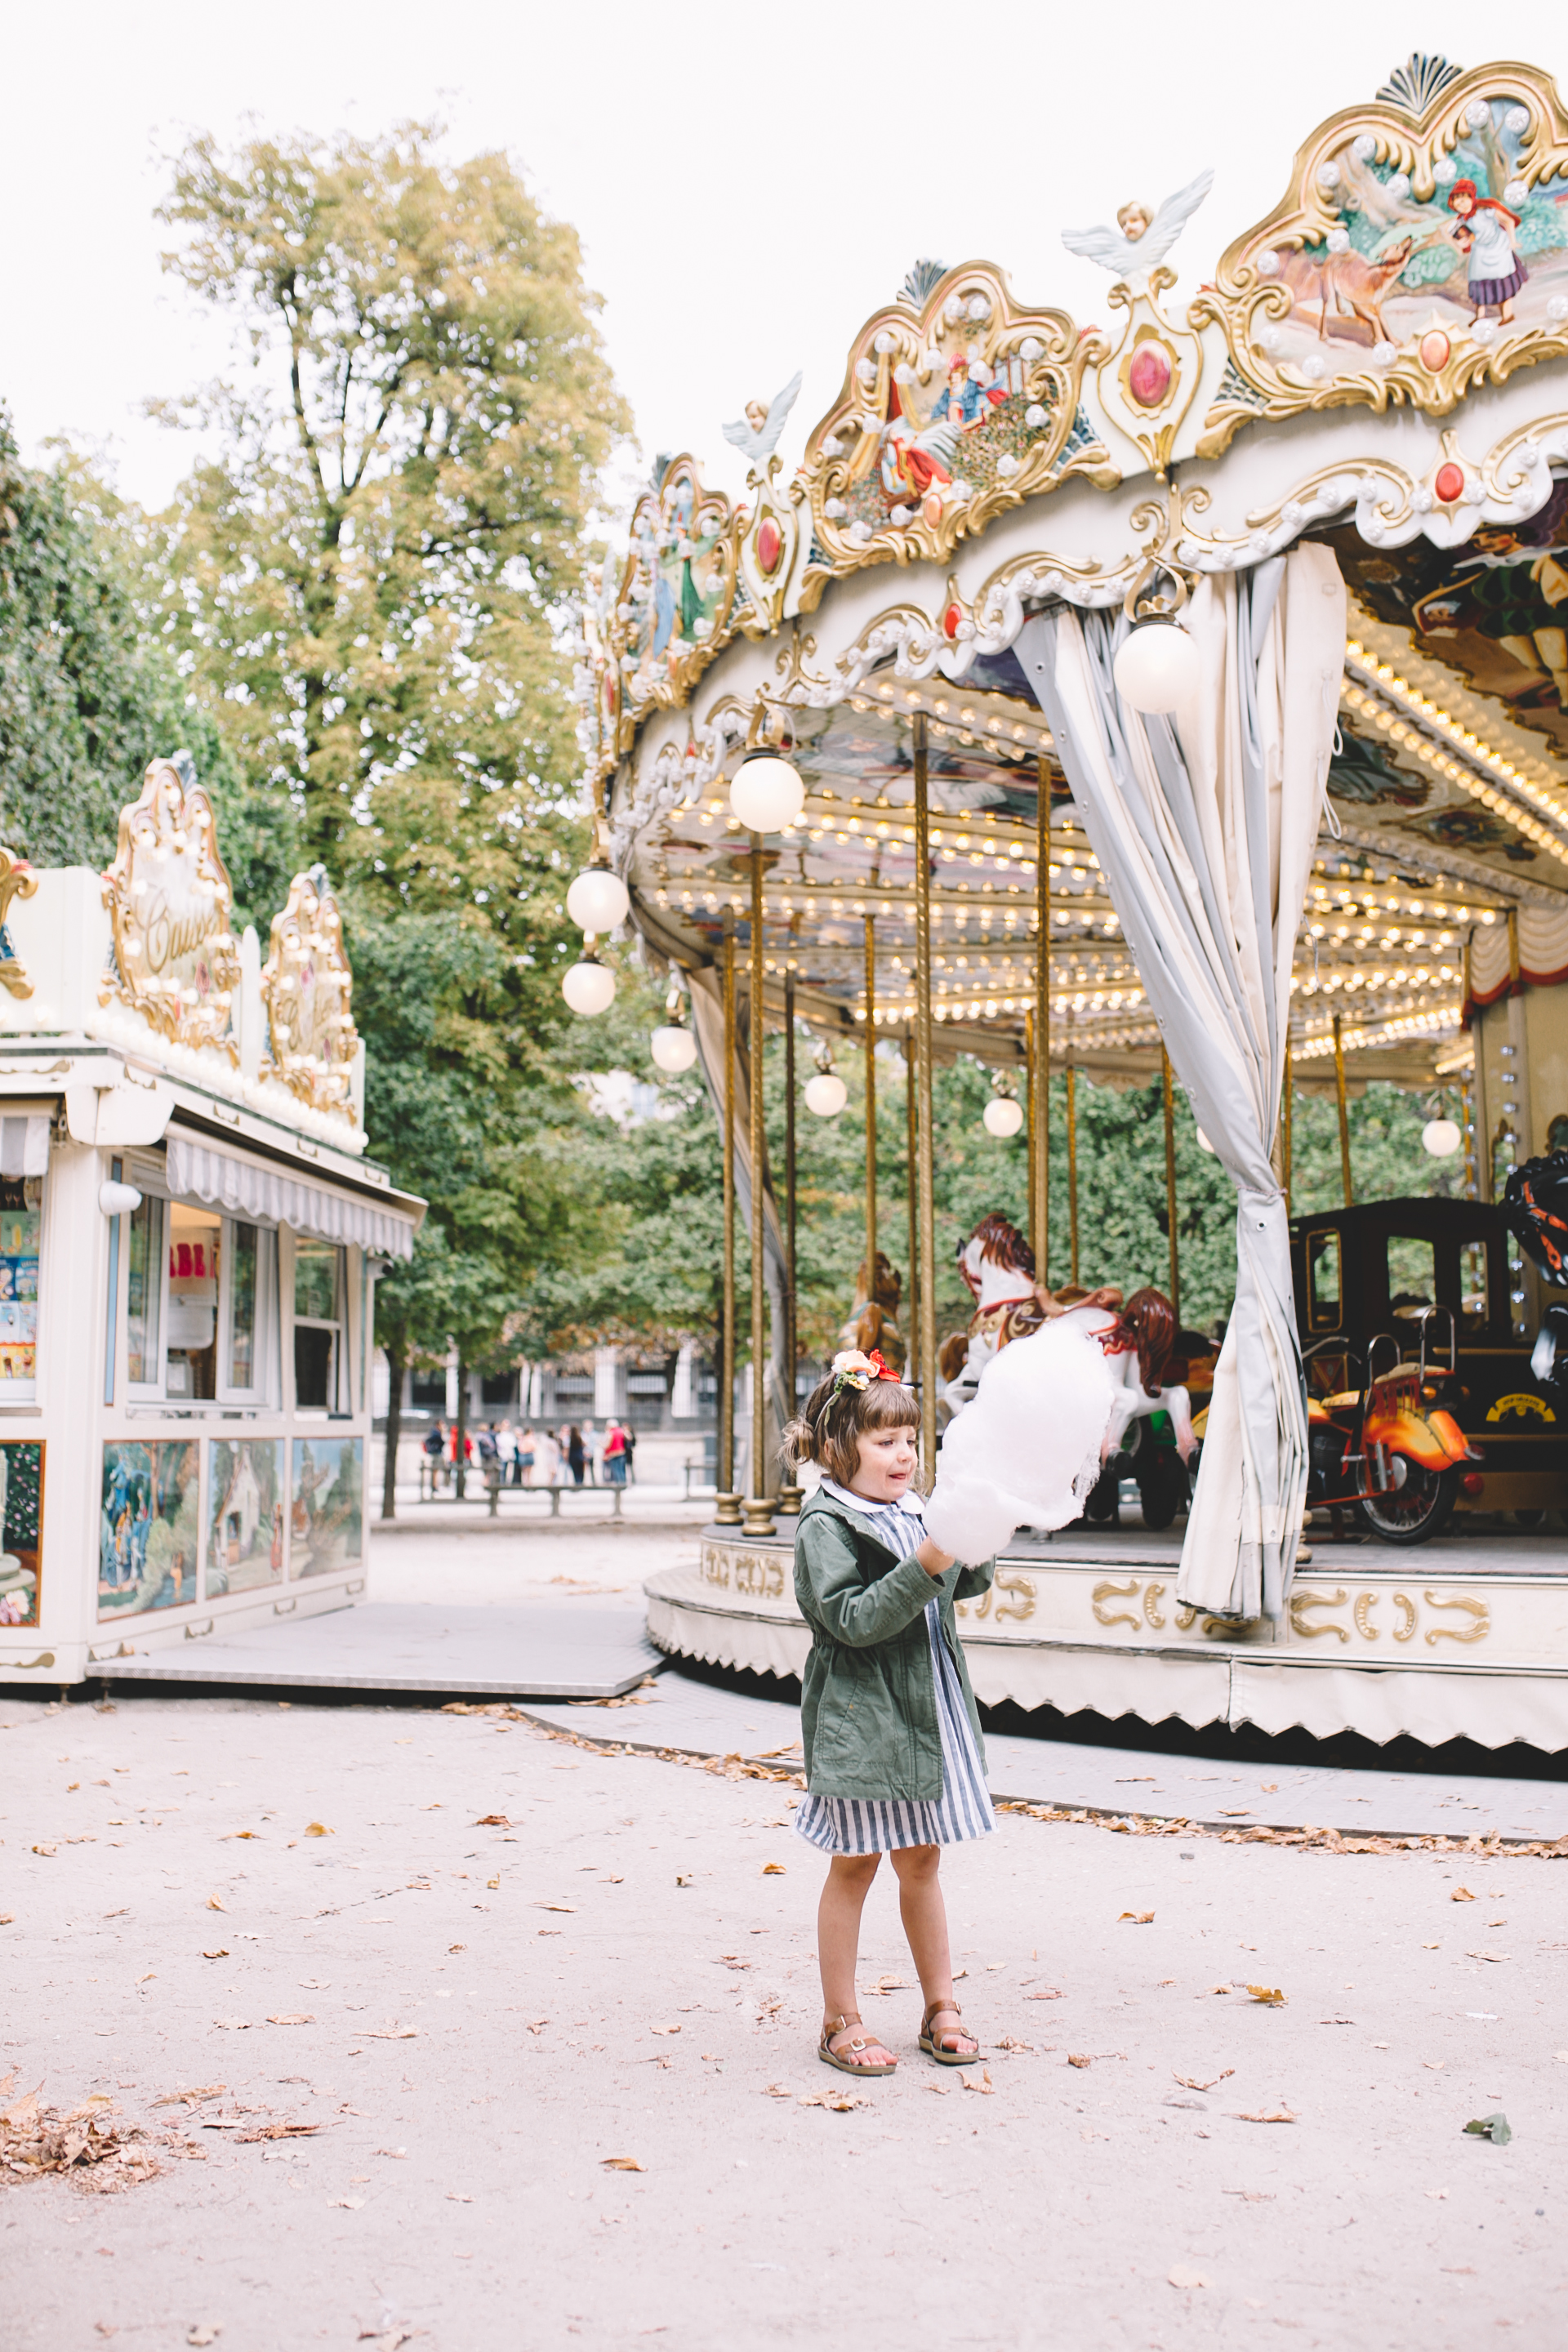 Jardin des Tuileries Paris France Carousel  (6 of 7).jpg